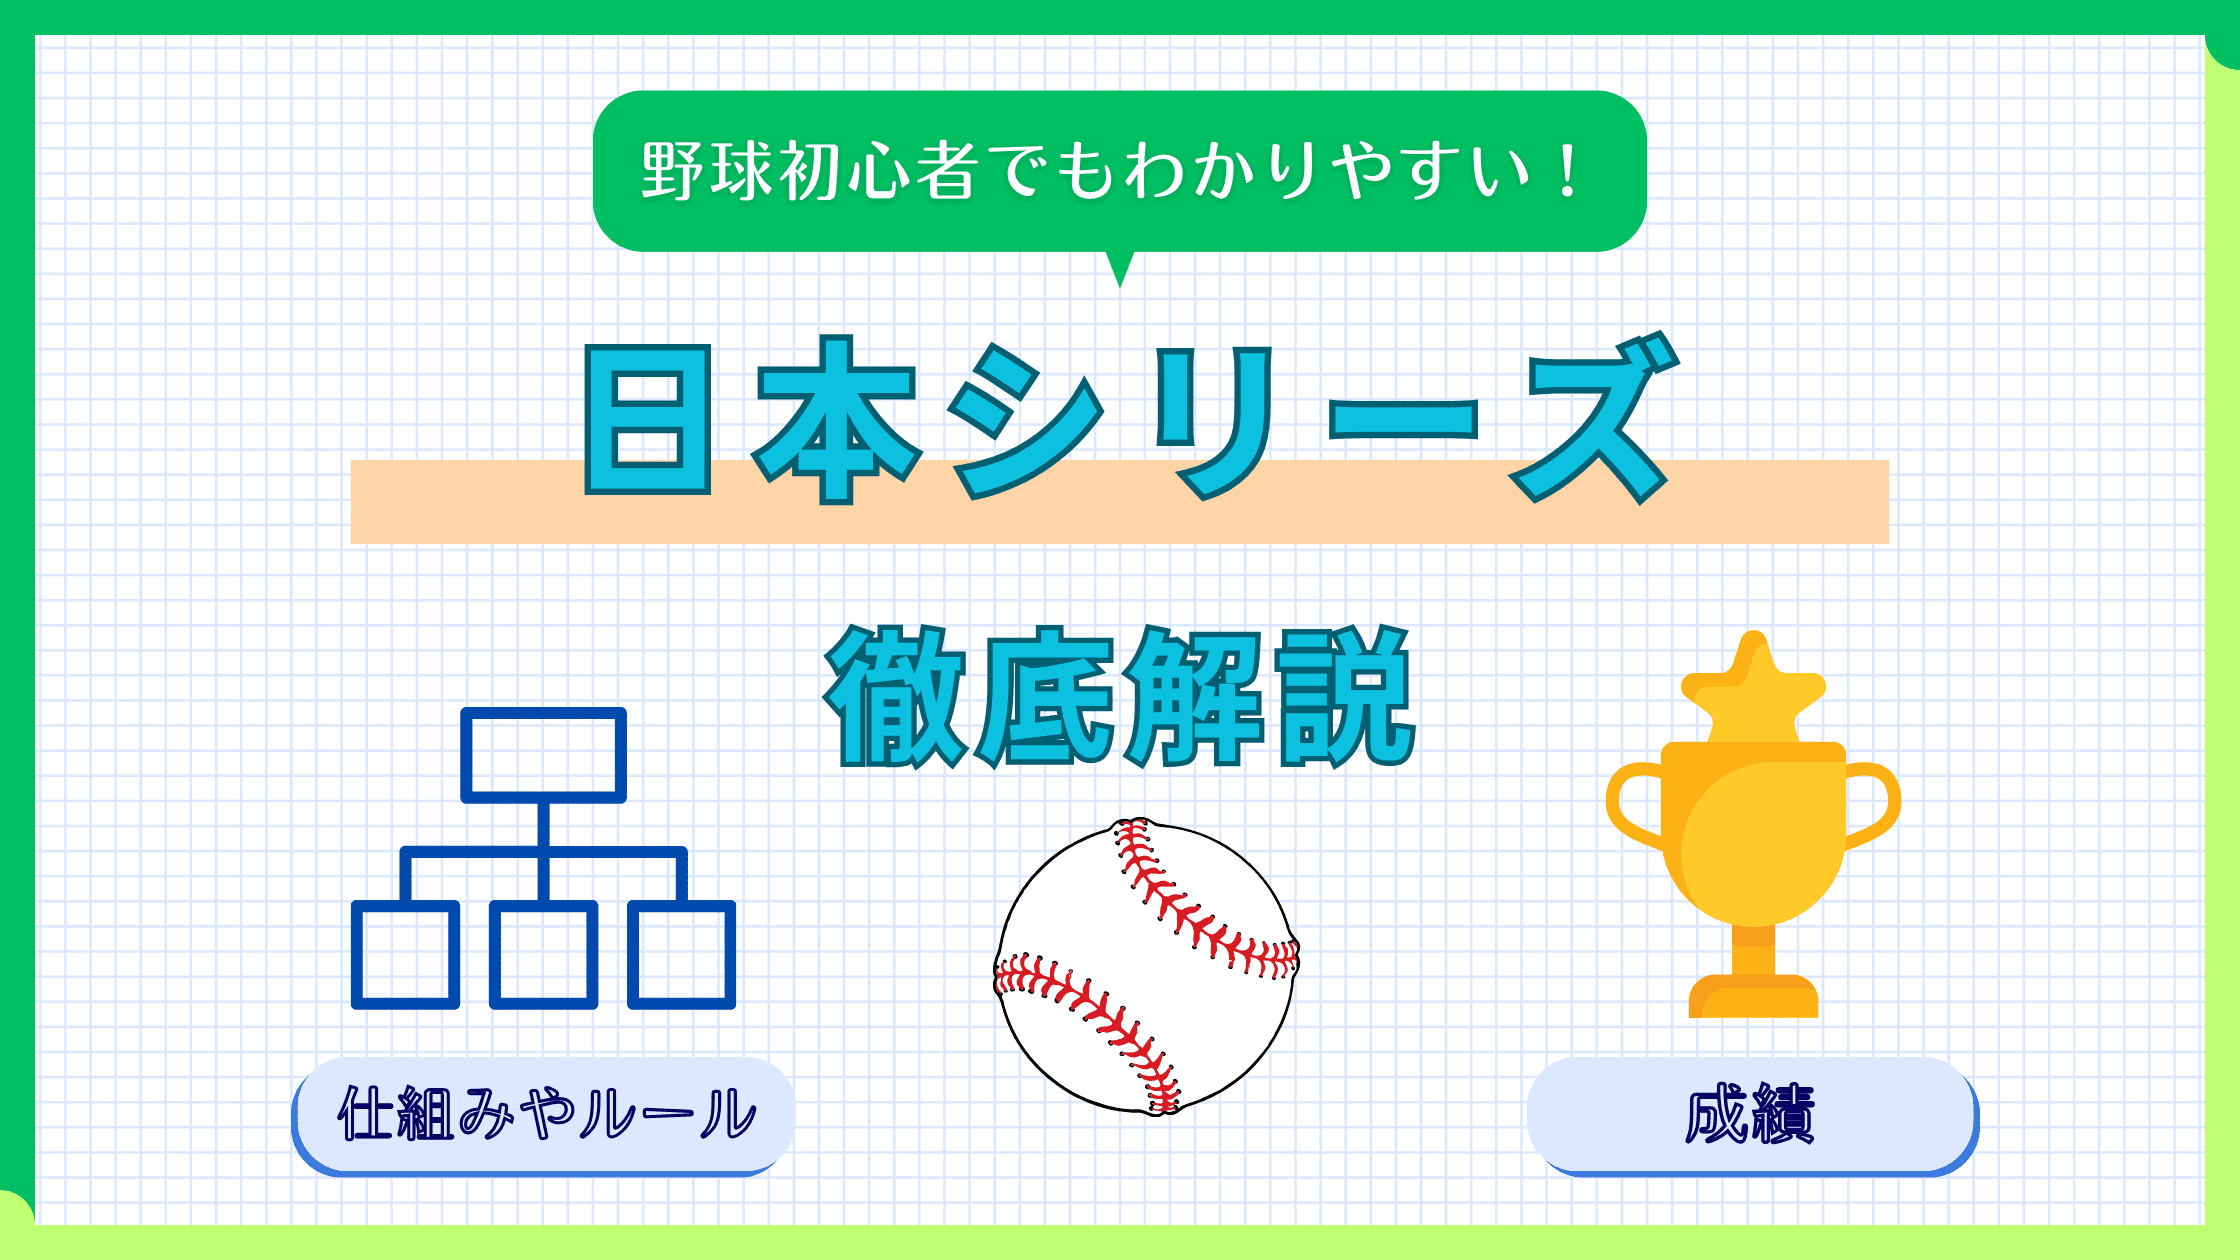 【プロ野球】日本シリーズとは!?仕組みやルール、過去の成績などをまとめて解説